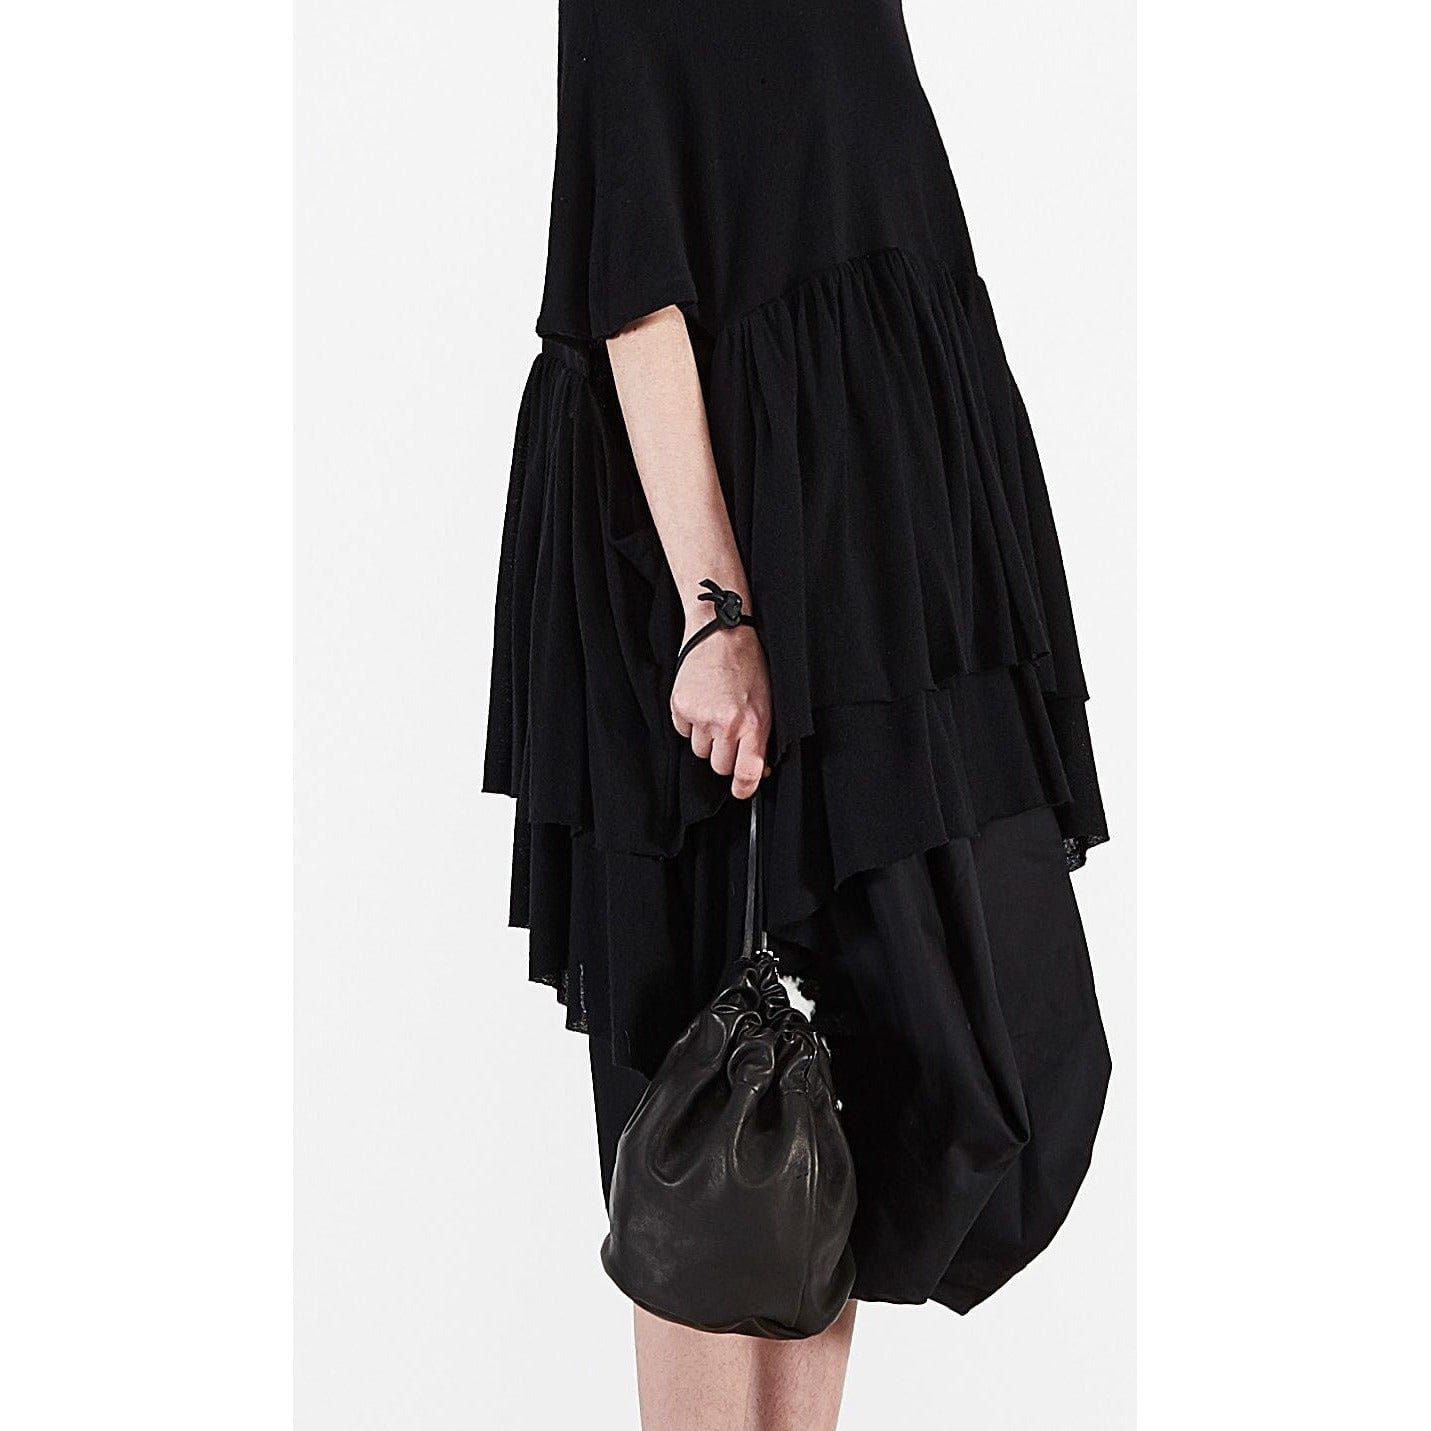 Barbara Bologna Dresses OS / Black / Cotton Barbara Bologna Dollz Dress